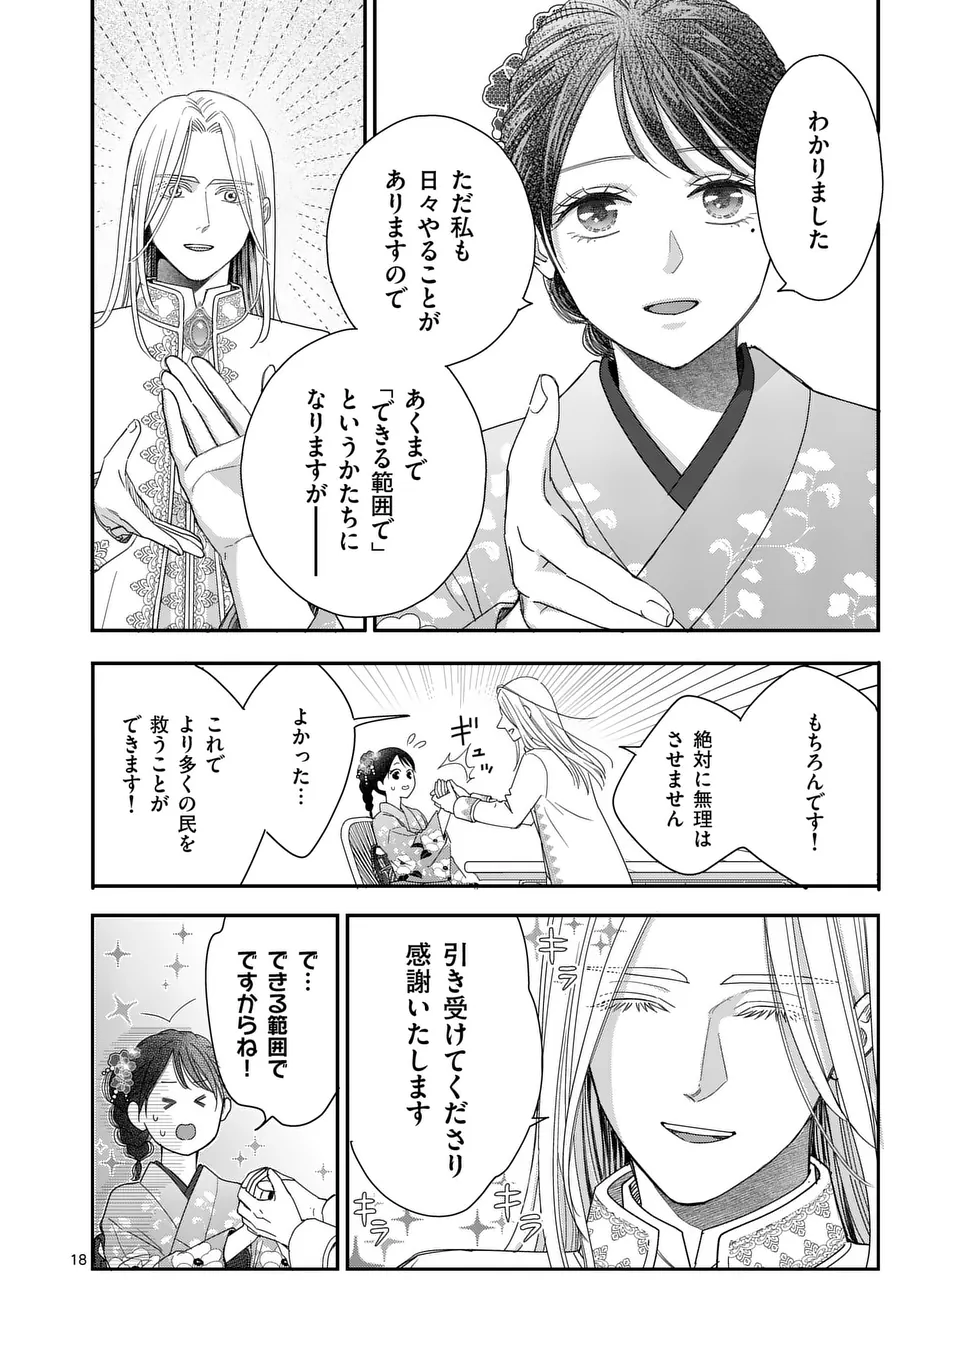 Makizoe de Isekai ni Yobidasareta no de, Sekai Kanmushi shite Wagashi Tsukurimasu - Chapter 8.2 - Page 2